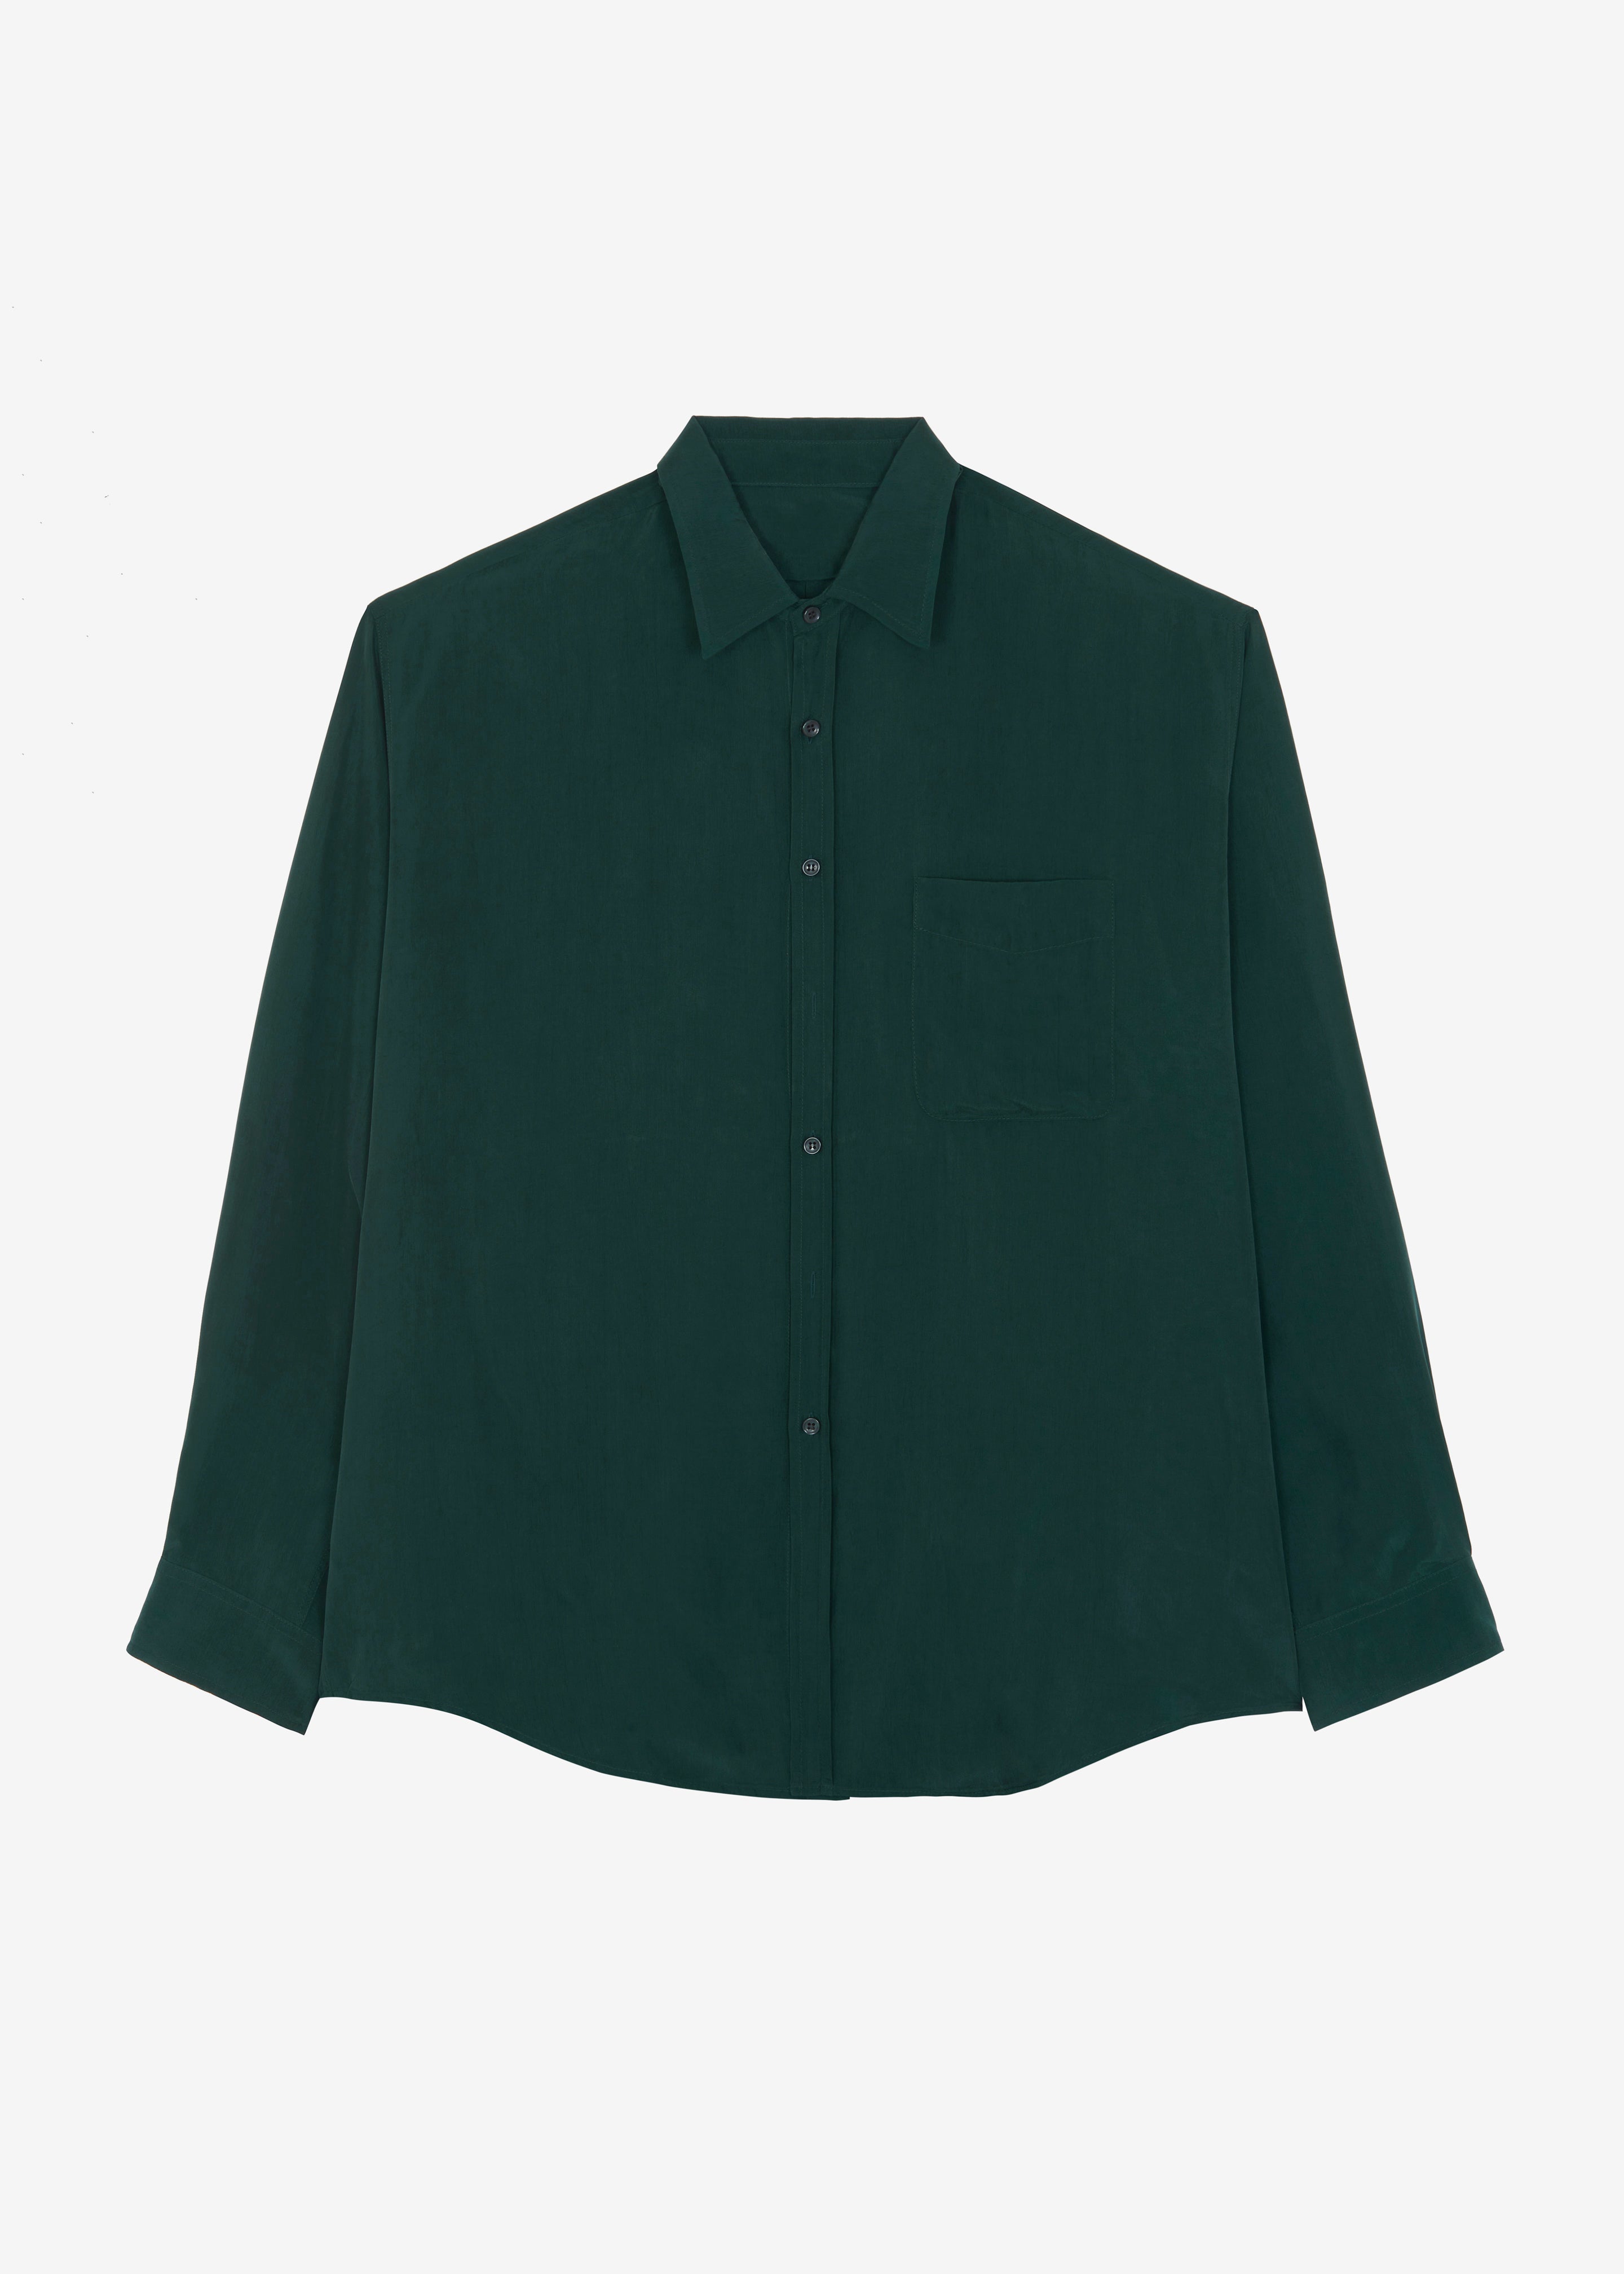 Leland Silky Shirt - Forest Green - 10